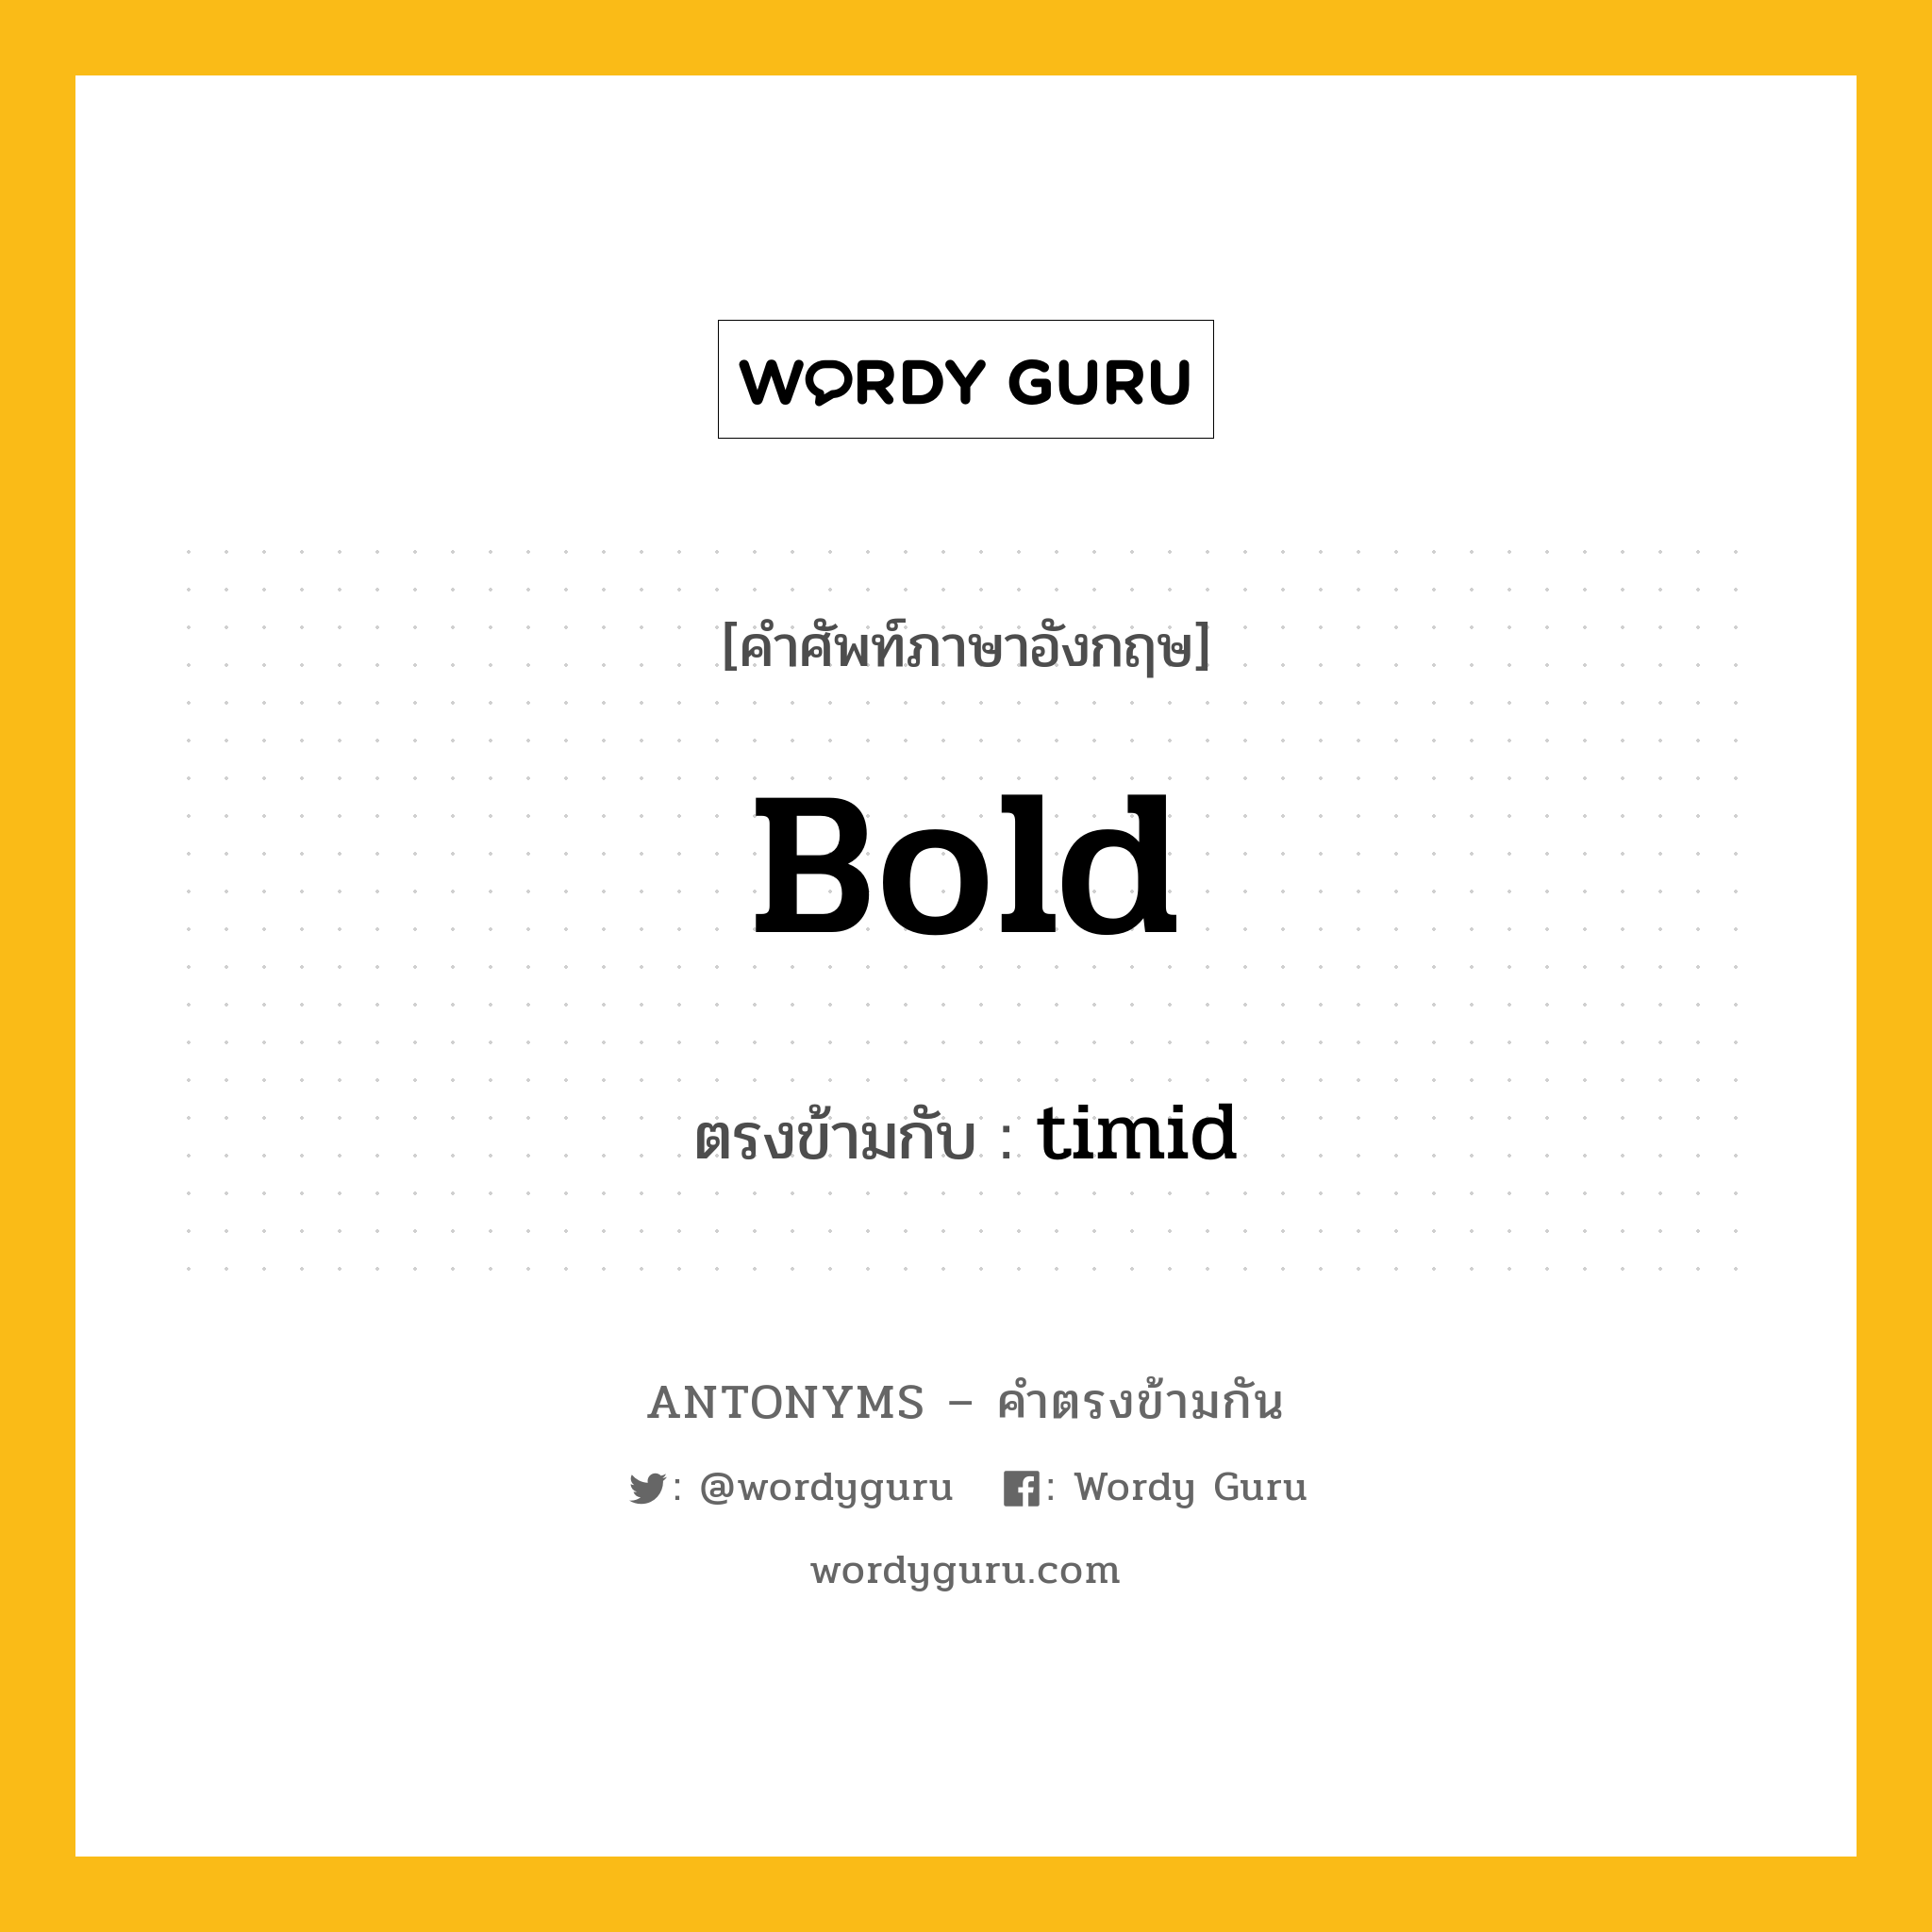 bold เป็นคำตรงข้ามกับคำไหนบ้าง?, คำศัพท์ภาษาอังกฤษ bold ตรงข้ามกับ timid หมวด timid